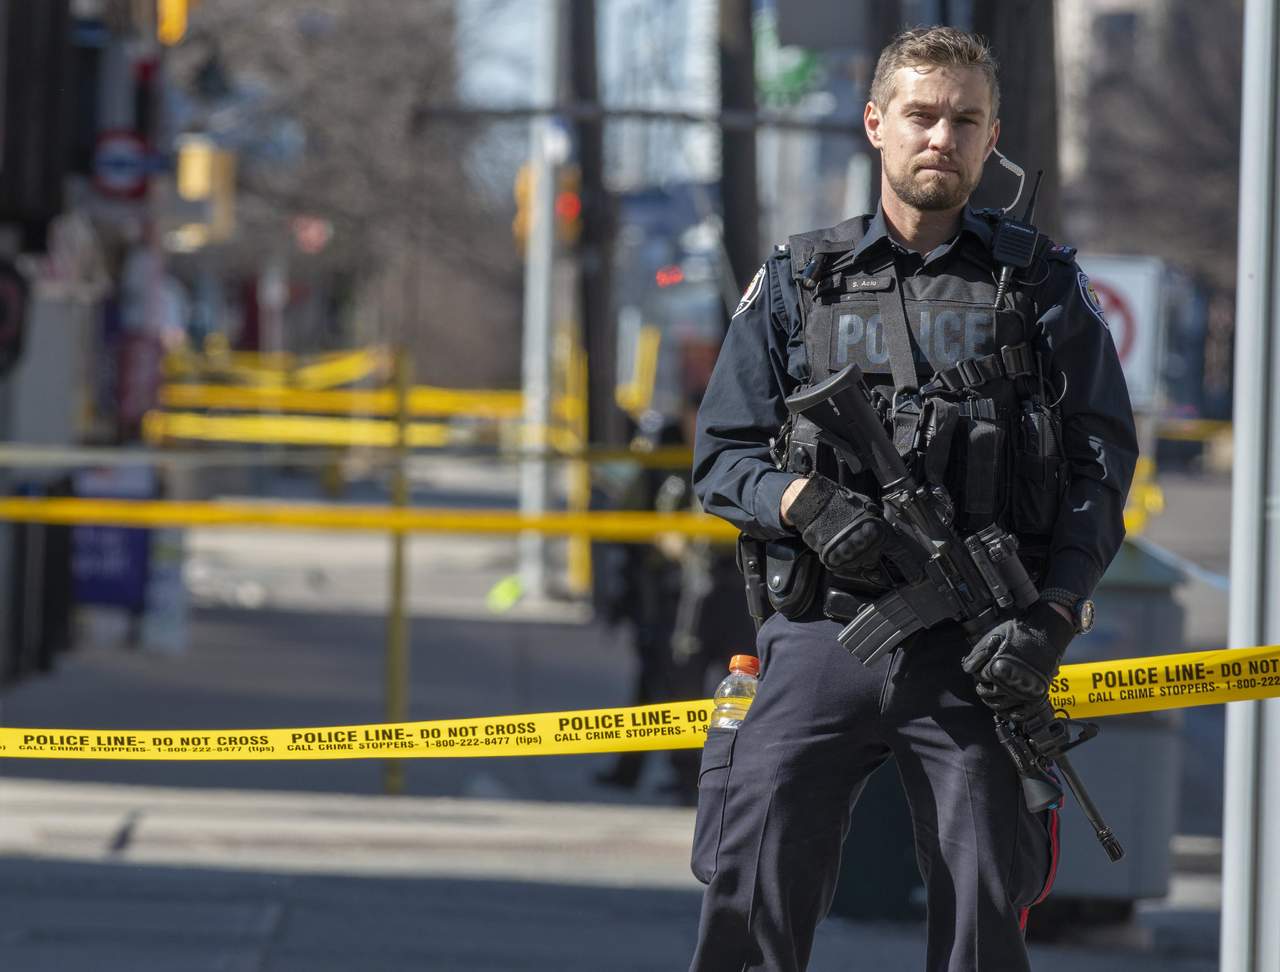 Las restricciones se producen horas después de que una furgoneta arrollase a decenas de personas en la zona norte de Toronto, causando la muerte a nueve personas y heridas a otras 16. (EFE)